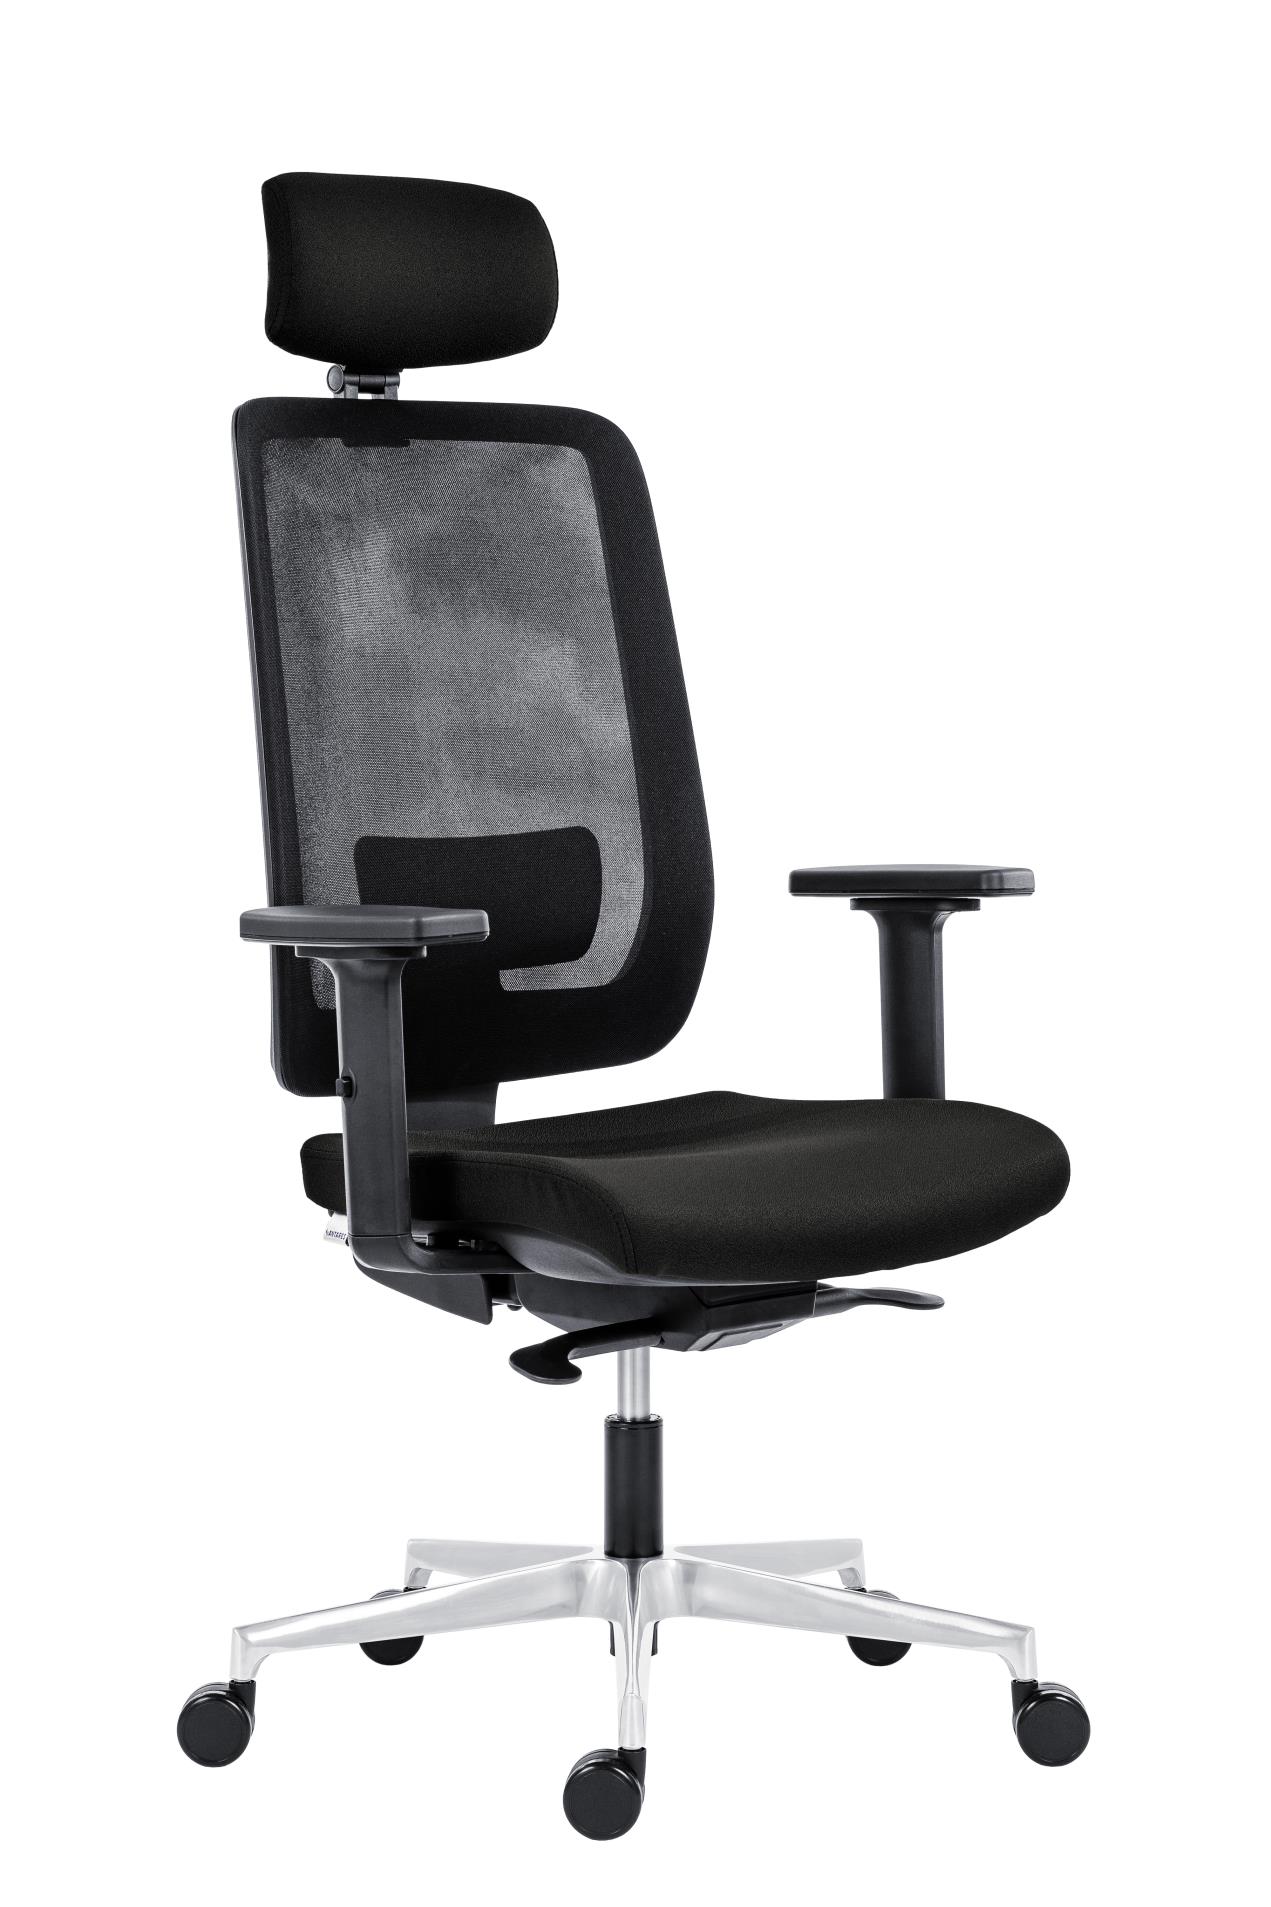 Antares Kancelářská židle Eclipse Net - s podhlavníkem, synchronní, černá